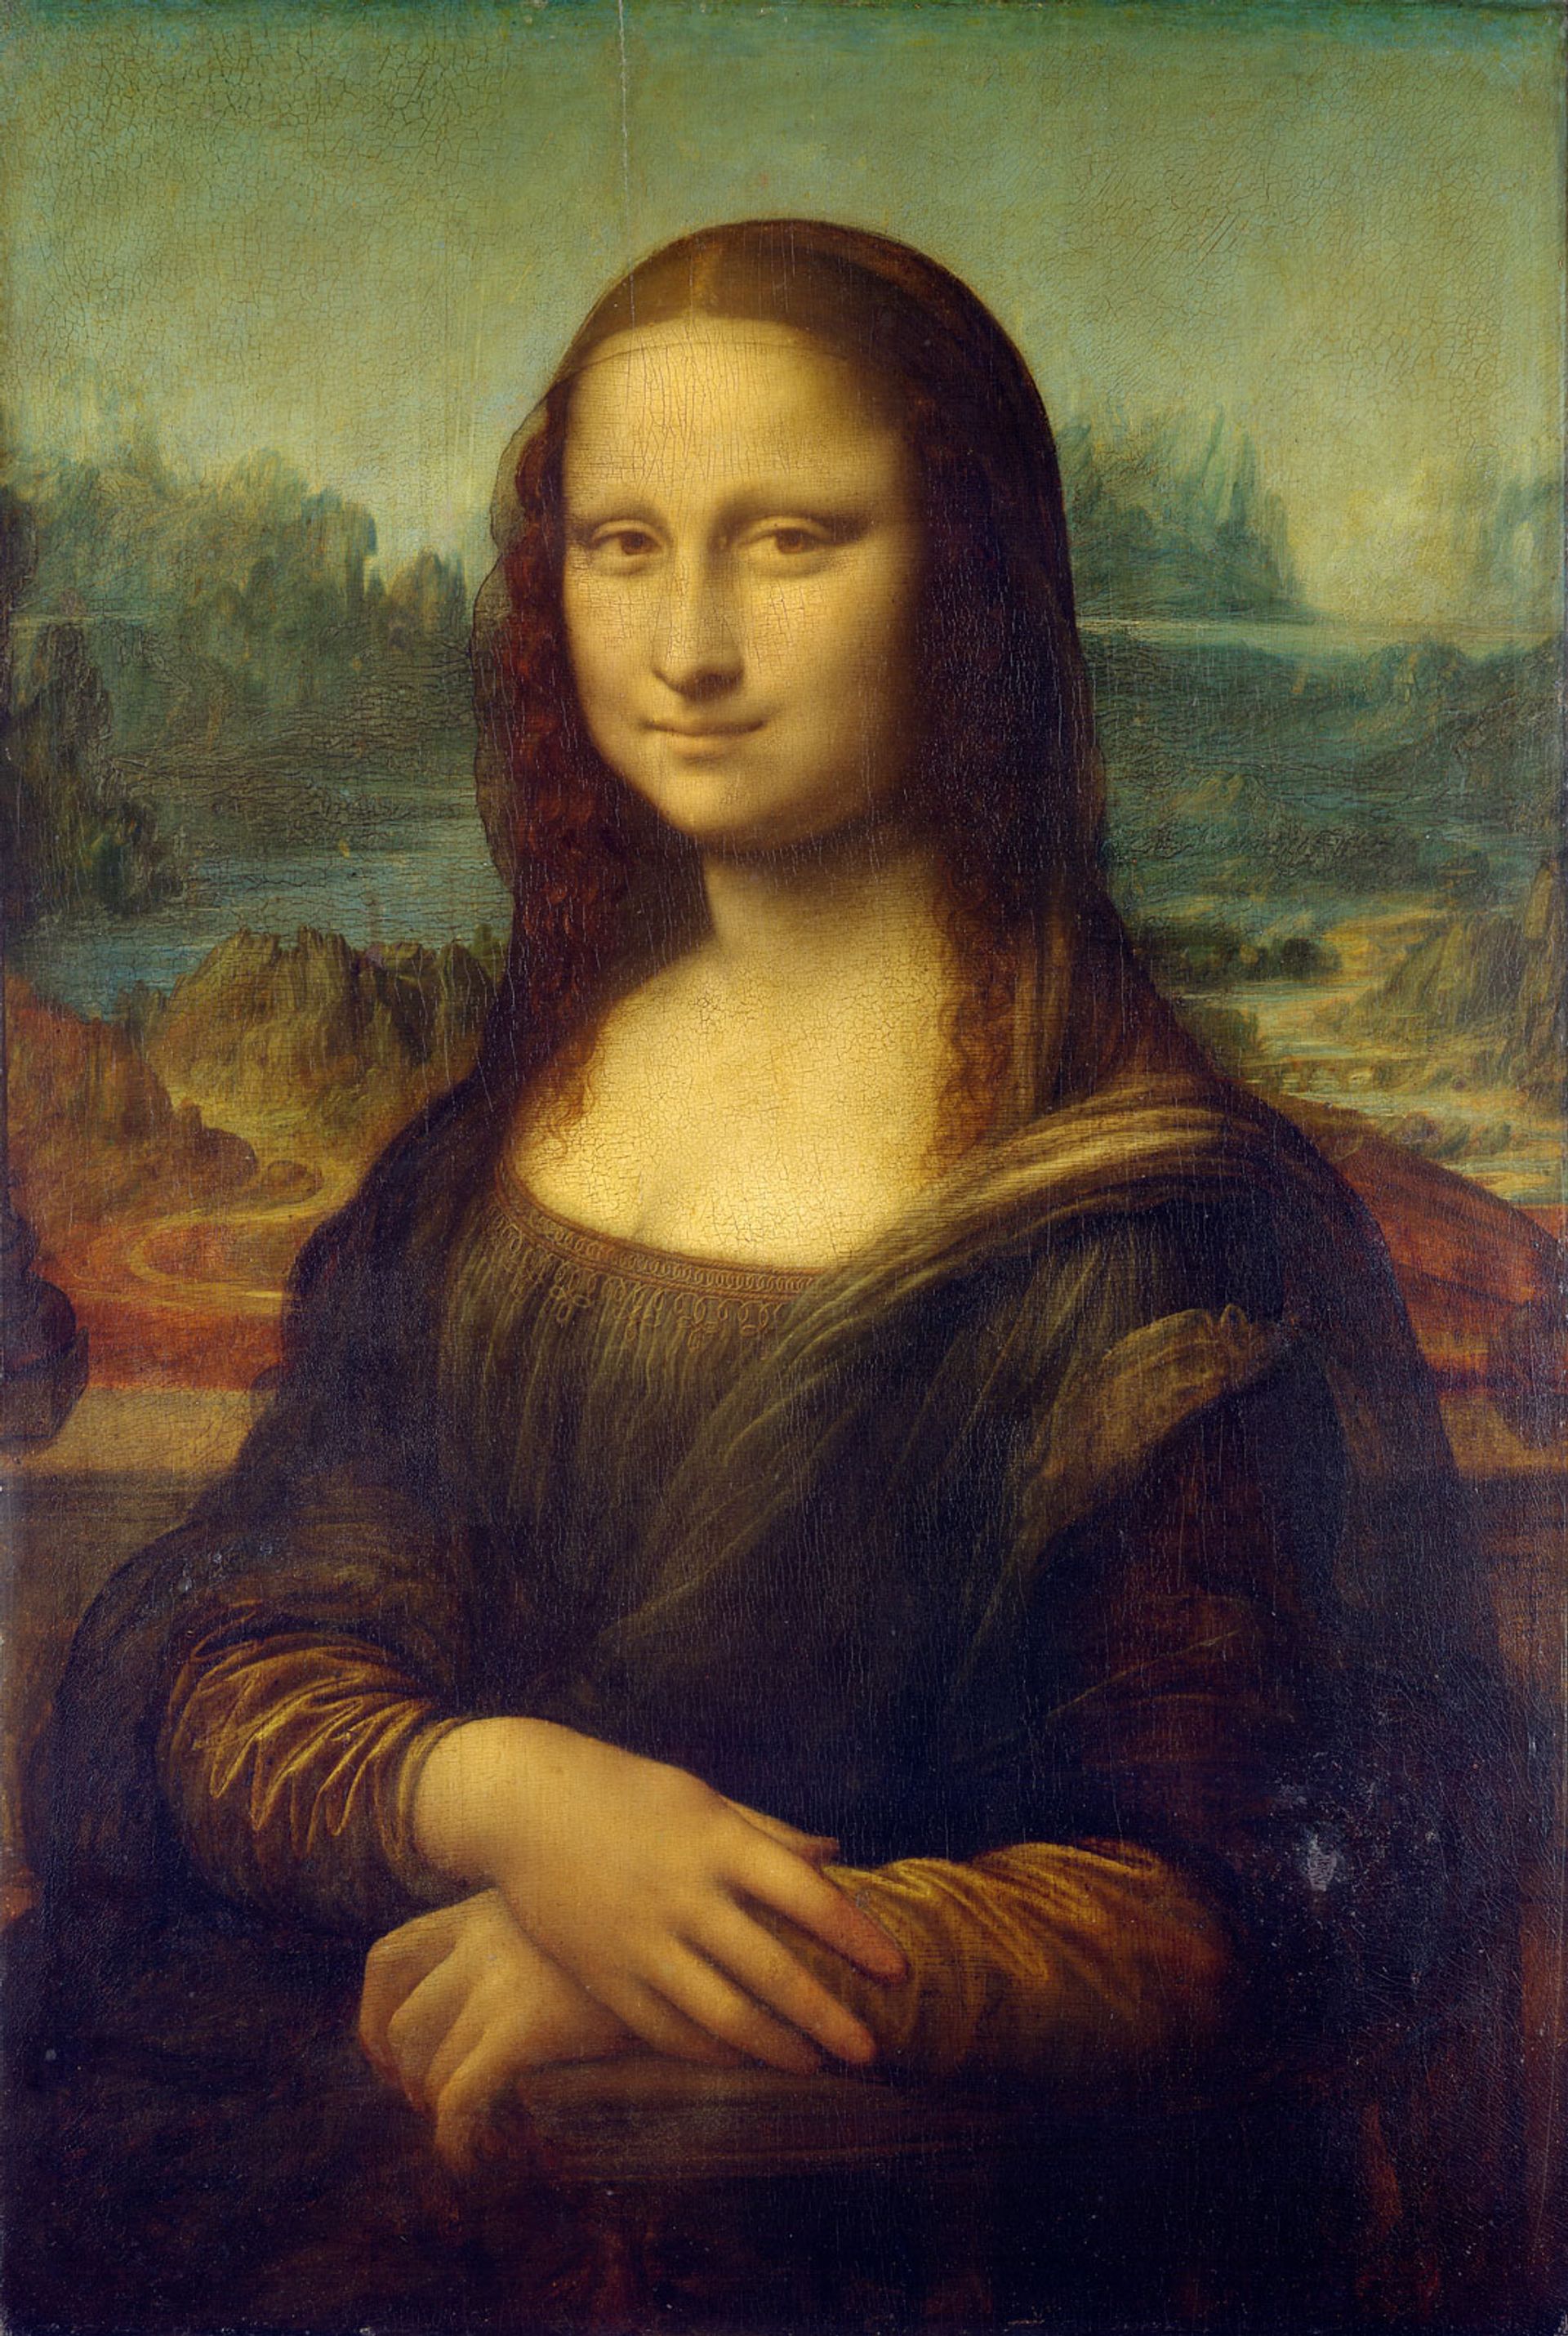 Leonardo da Vinci’s Mona Lisa (around 1503-19) 